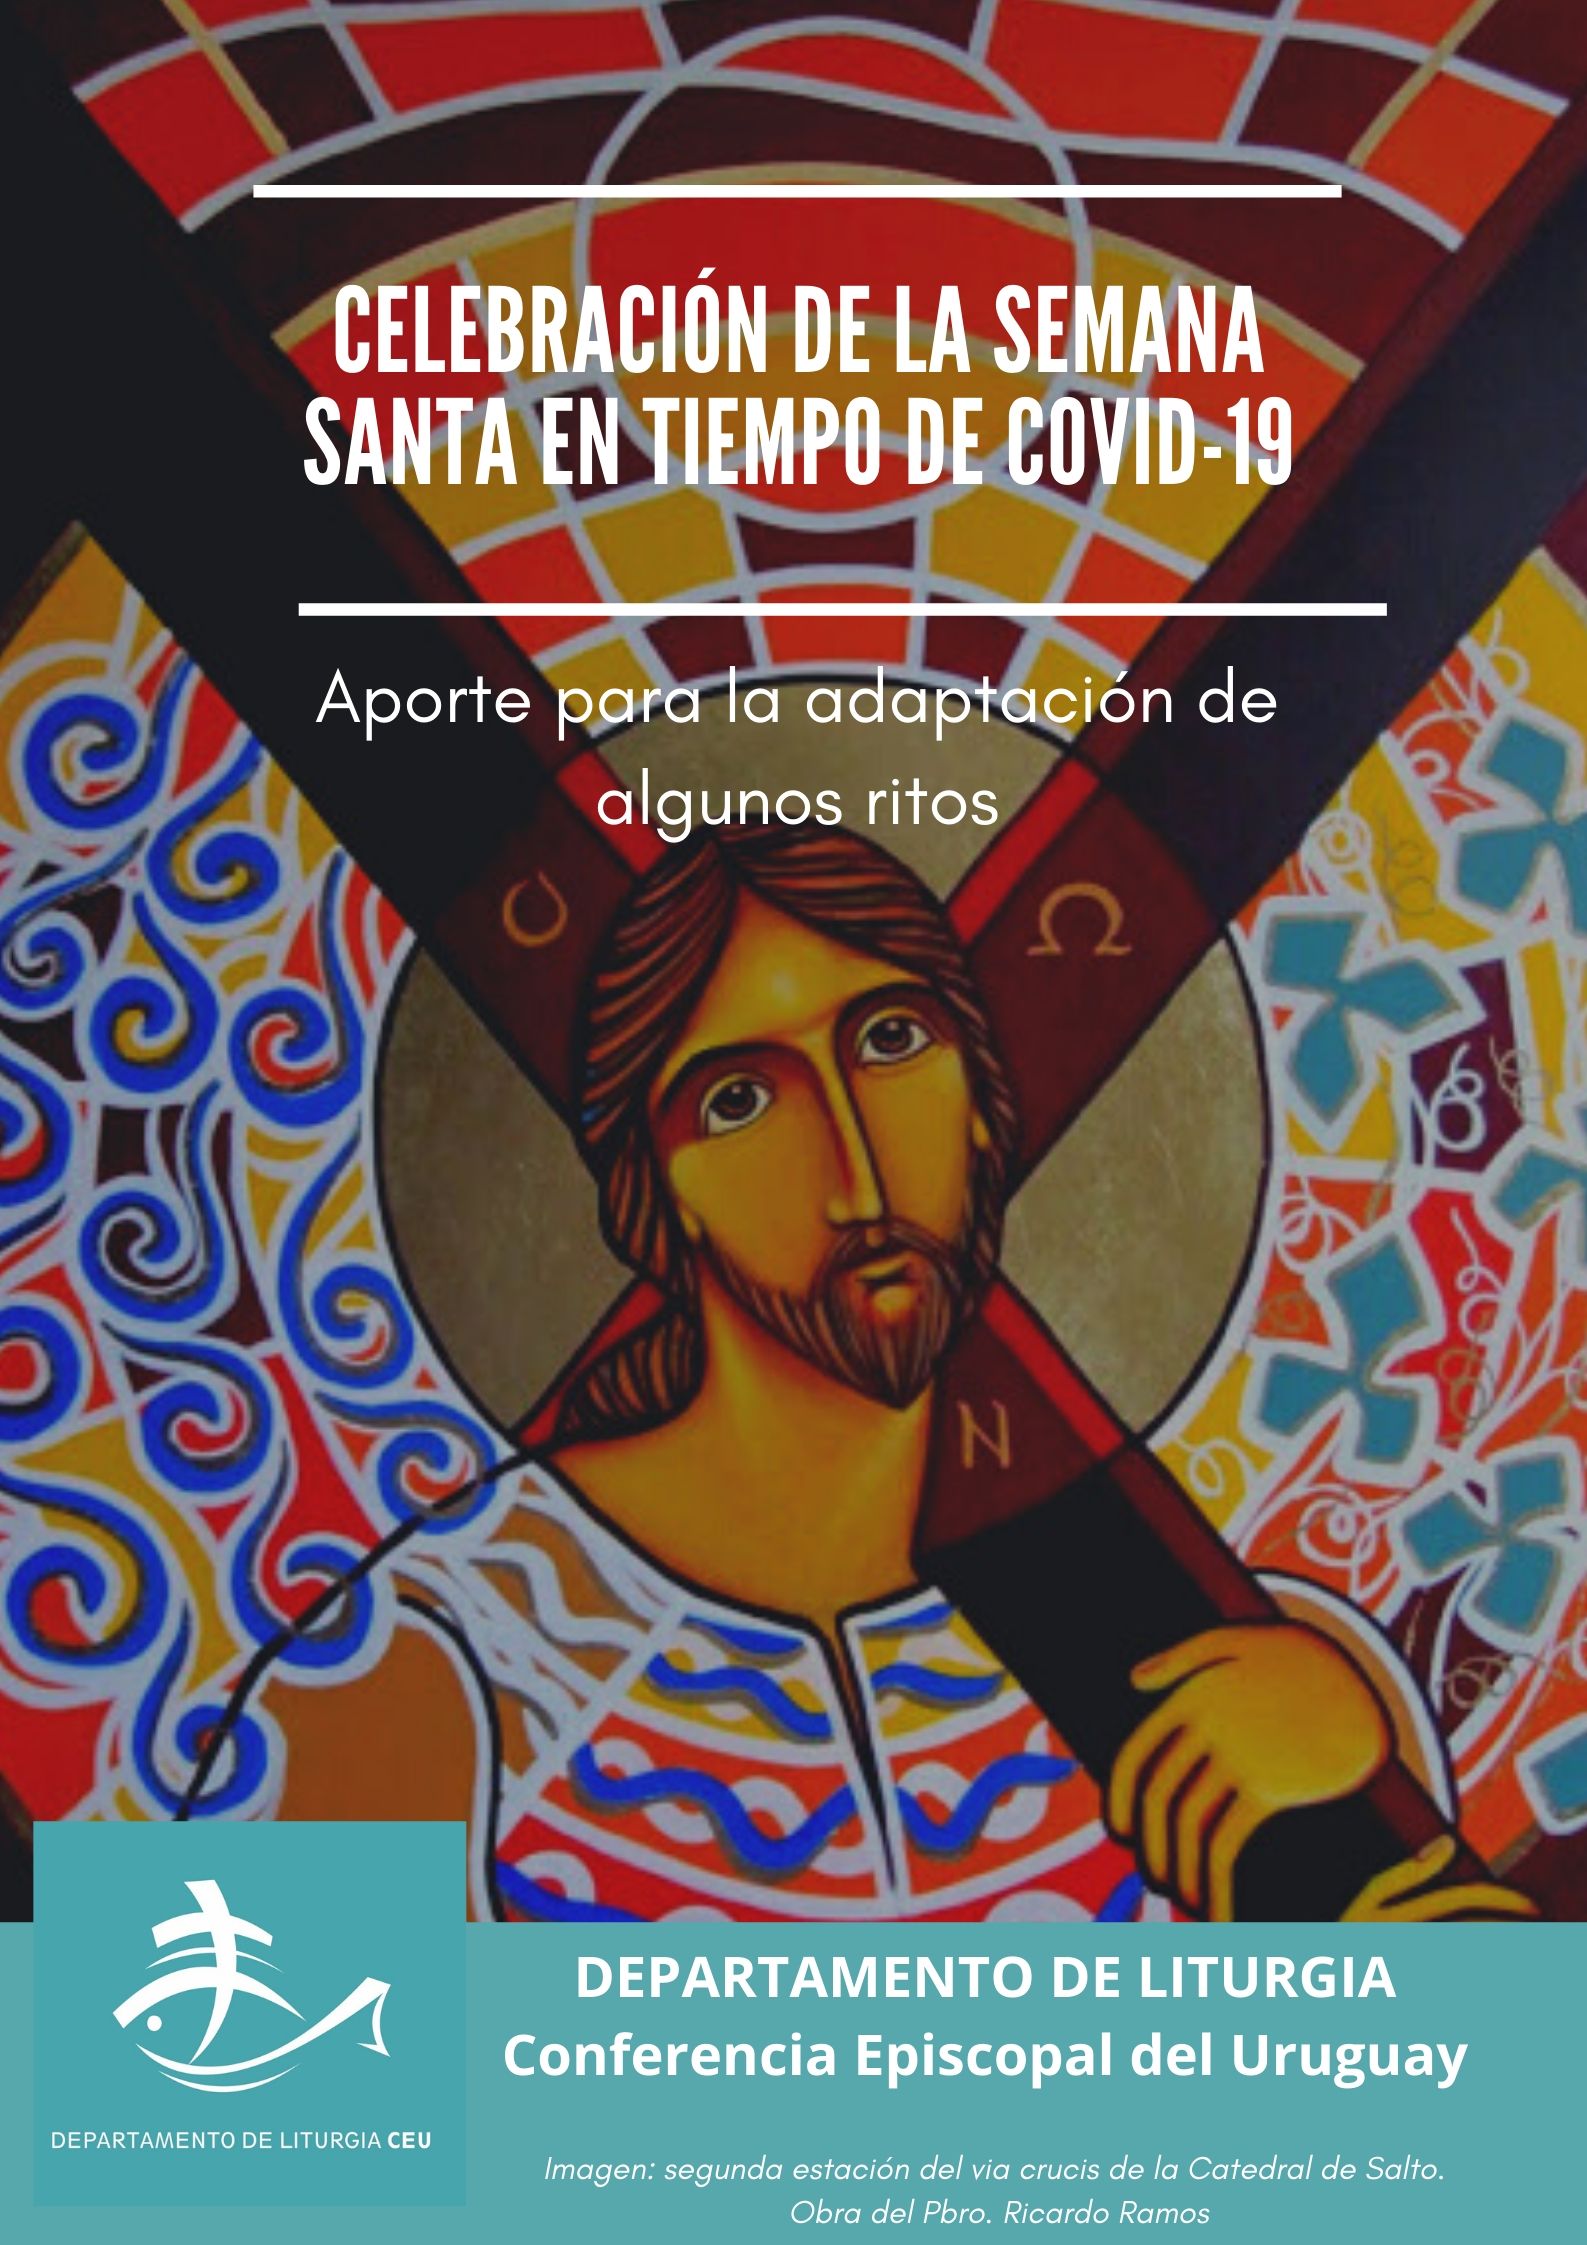 Departamento de Liturgia de la CEU elaboró subsidio para celebraciones de Semana Santa